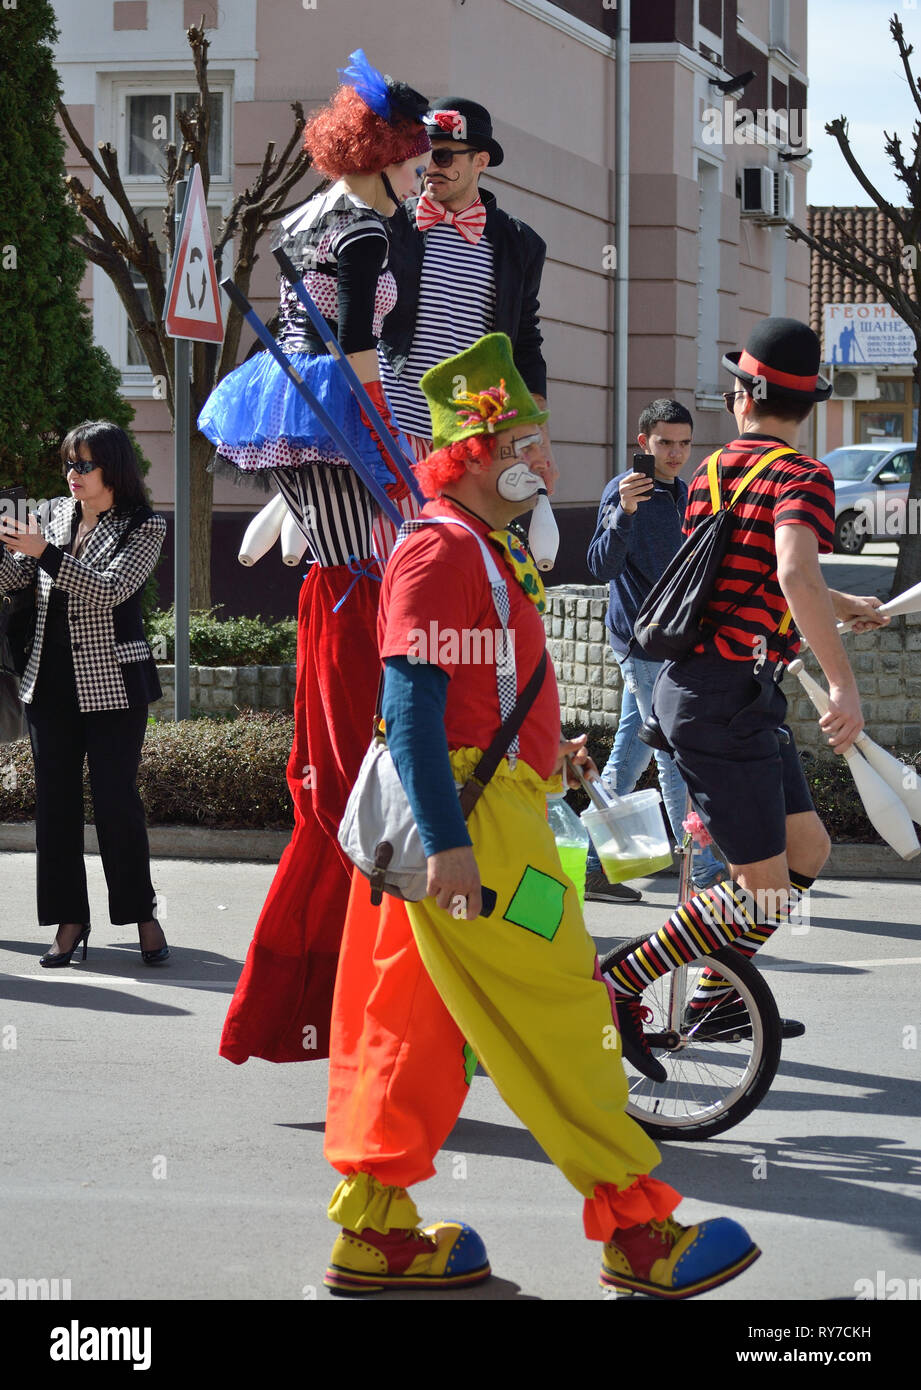 Disguised entertainer walking during carnival, Svilajnac, Serbia, Europe Stock Photo